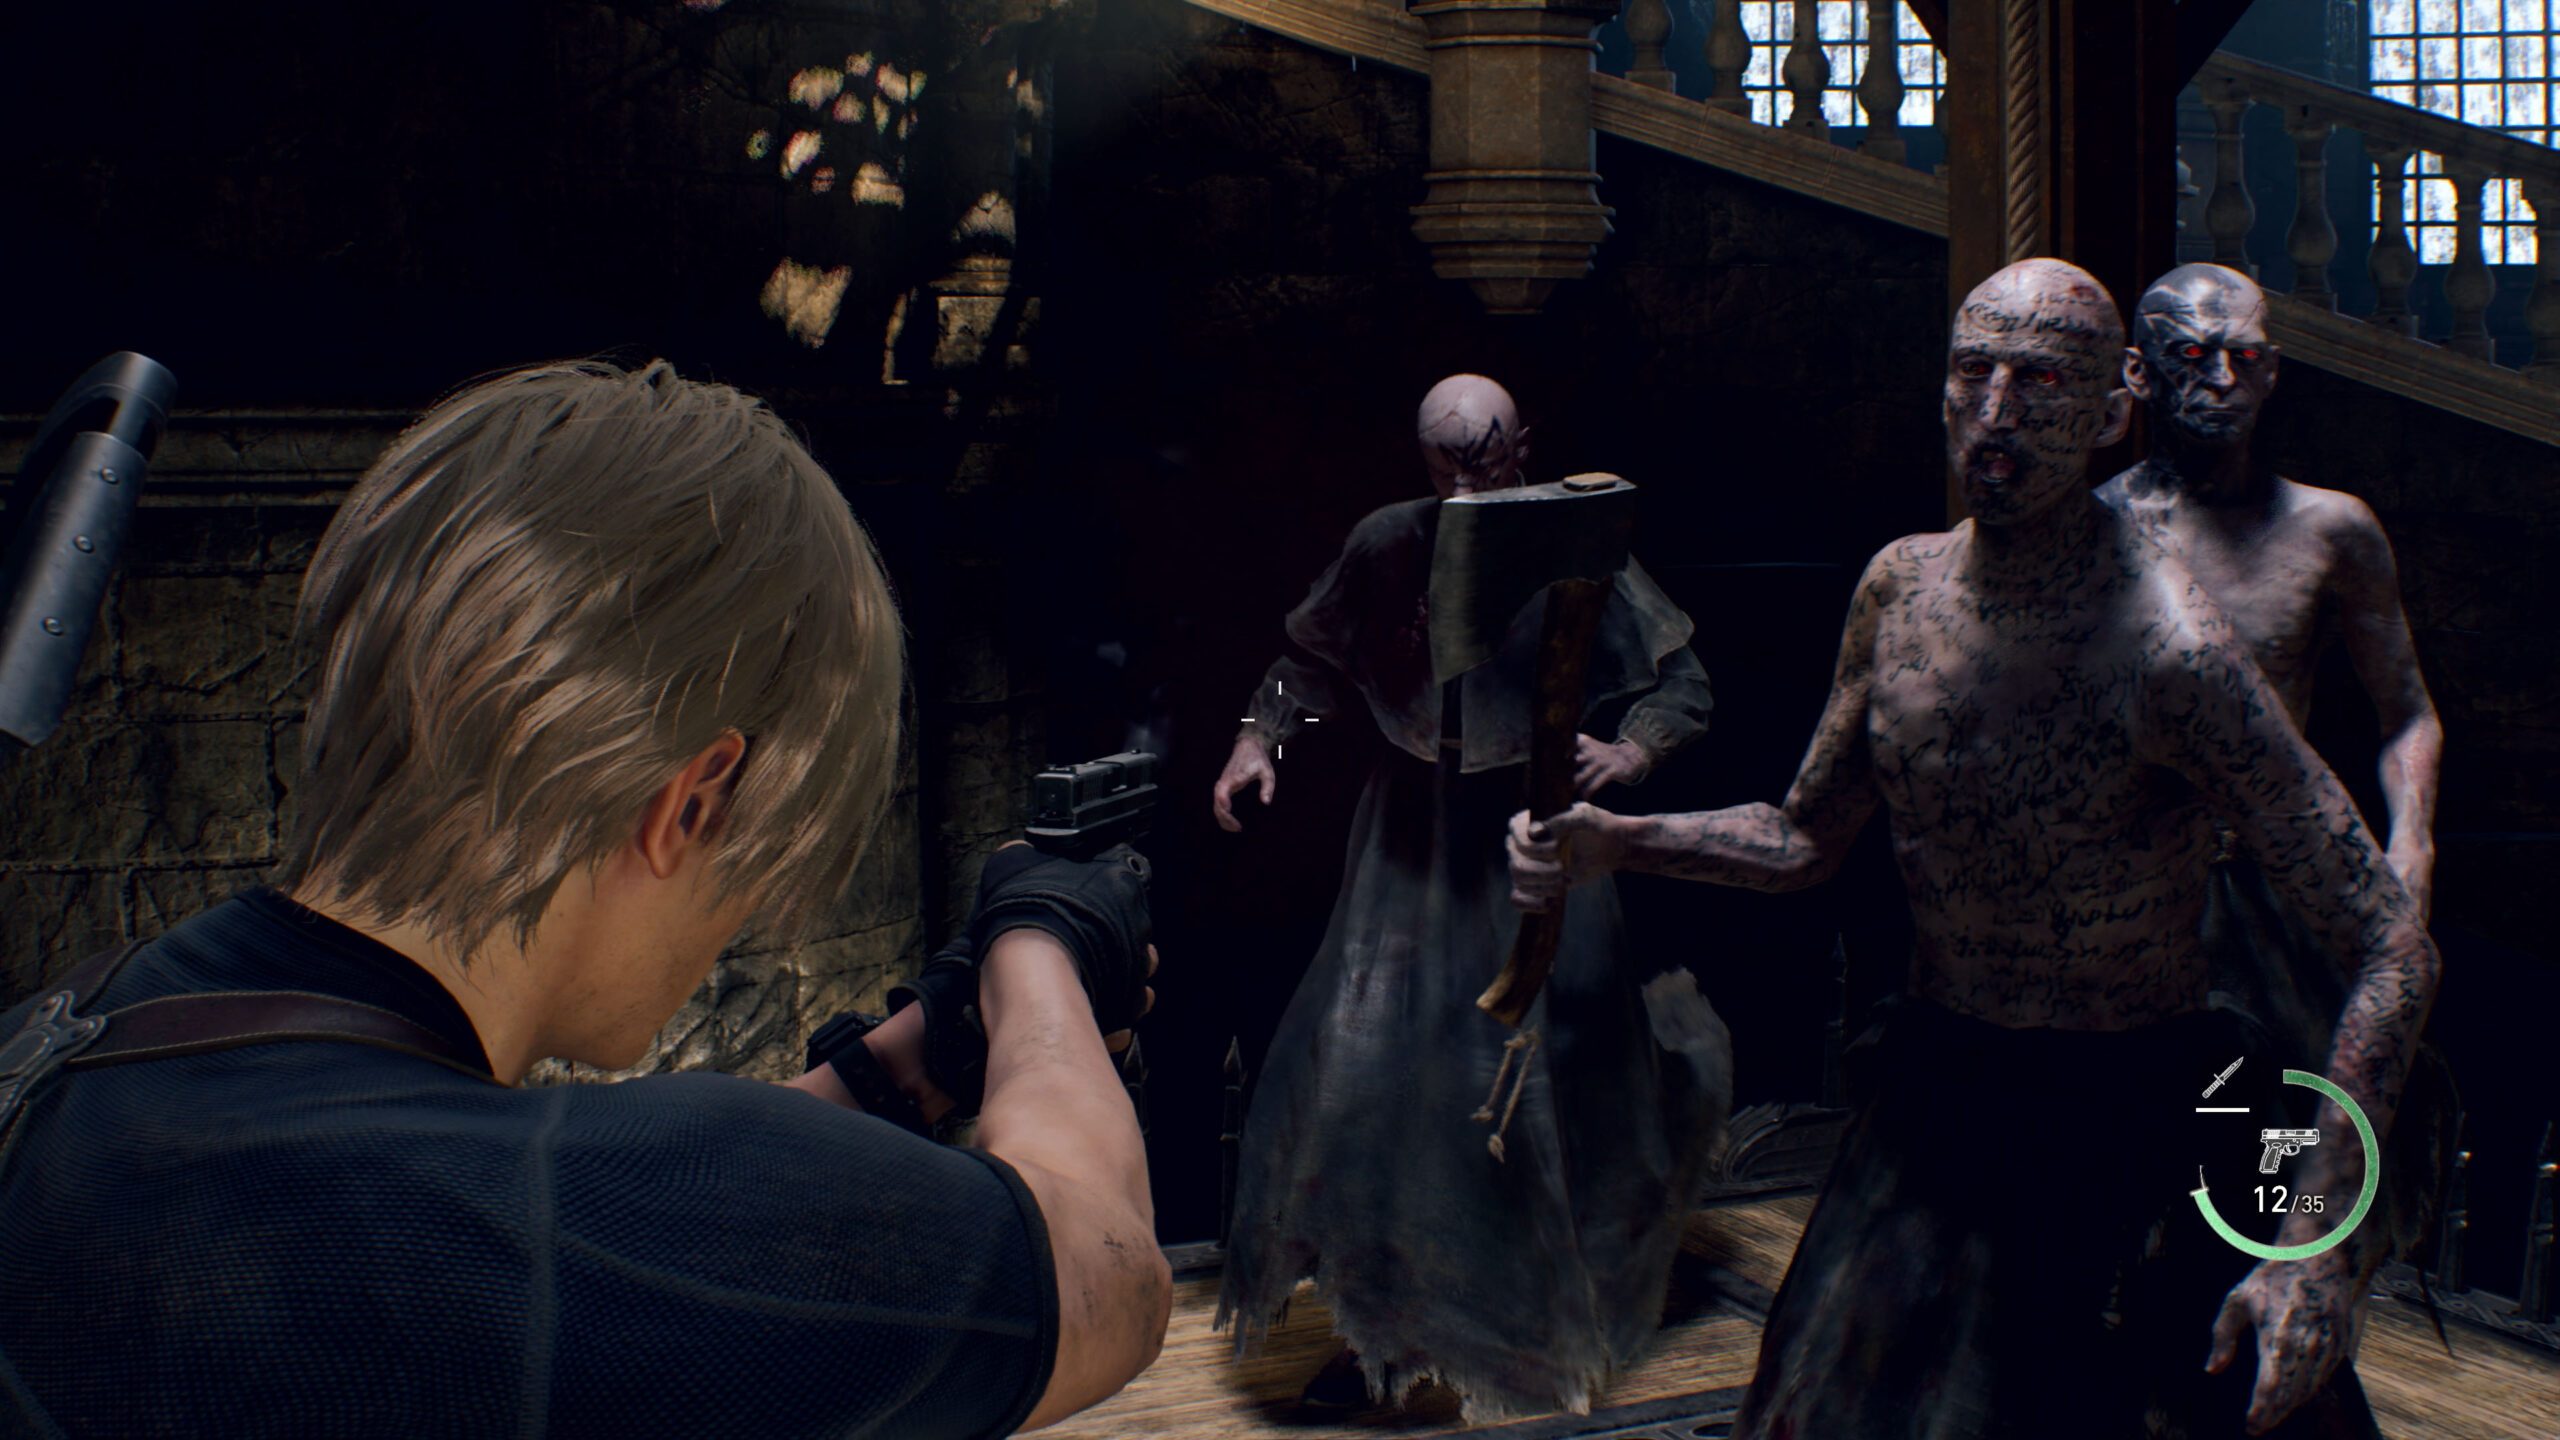 Leon apunta a sus enemigos, incluida una figura embozada y y otro personaje lleno de tatuajes que blande un hacha roja.